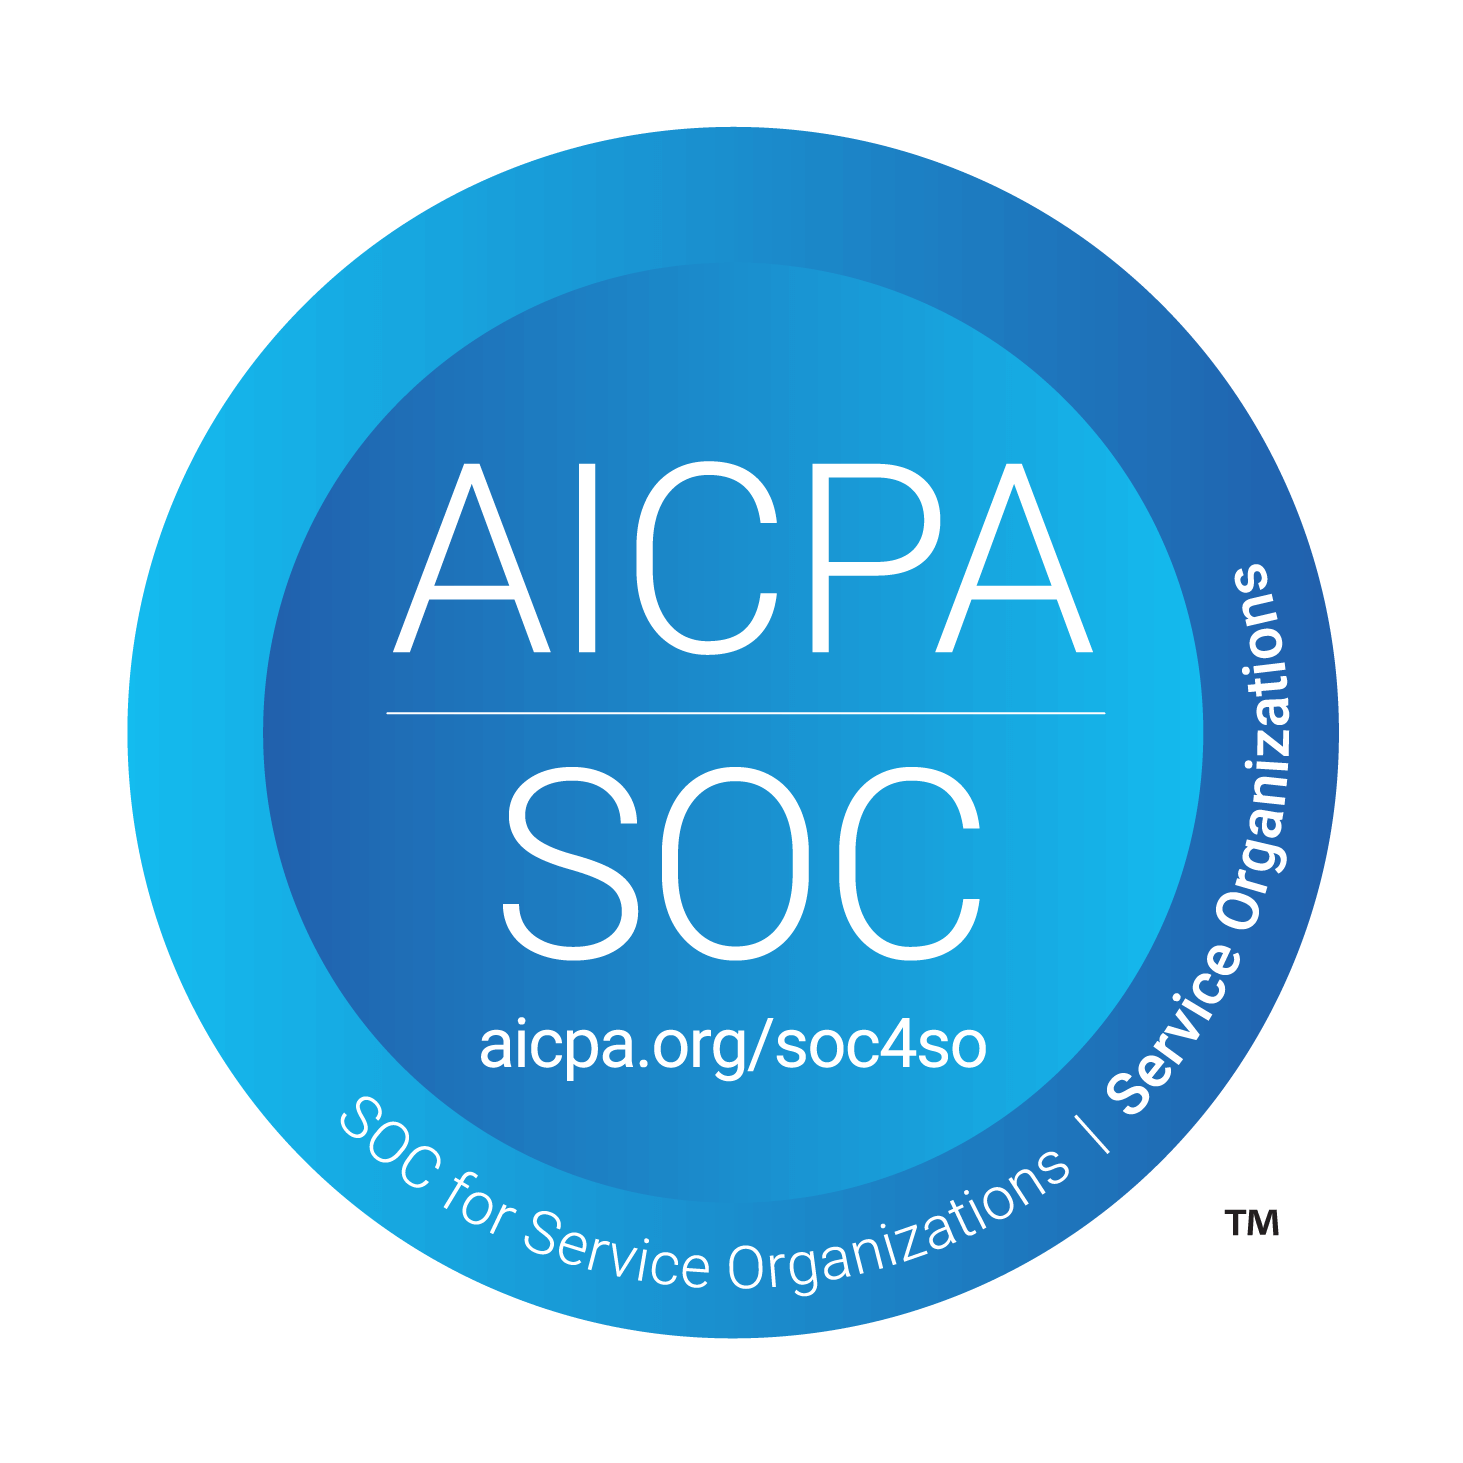 AICPA-Logo